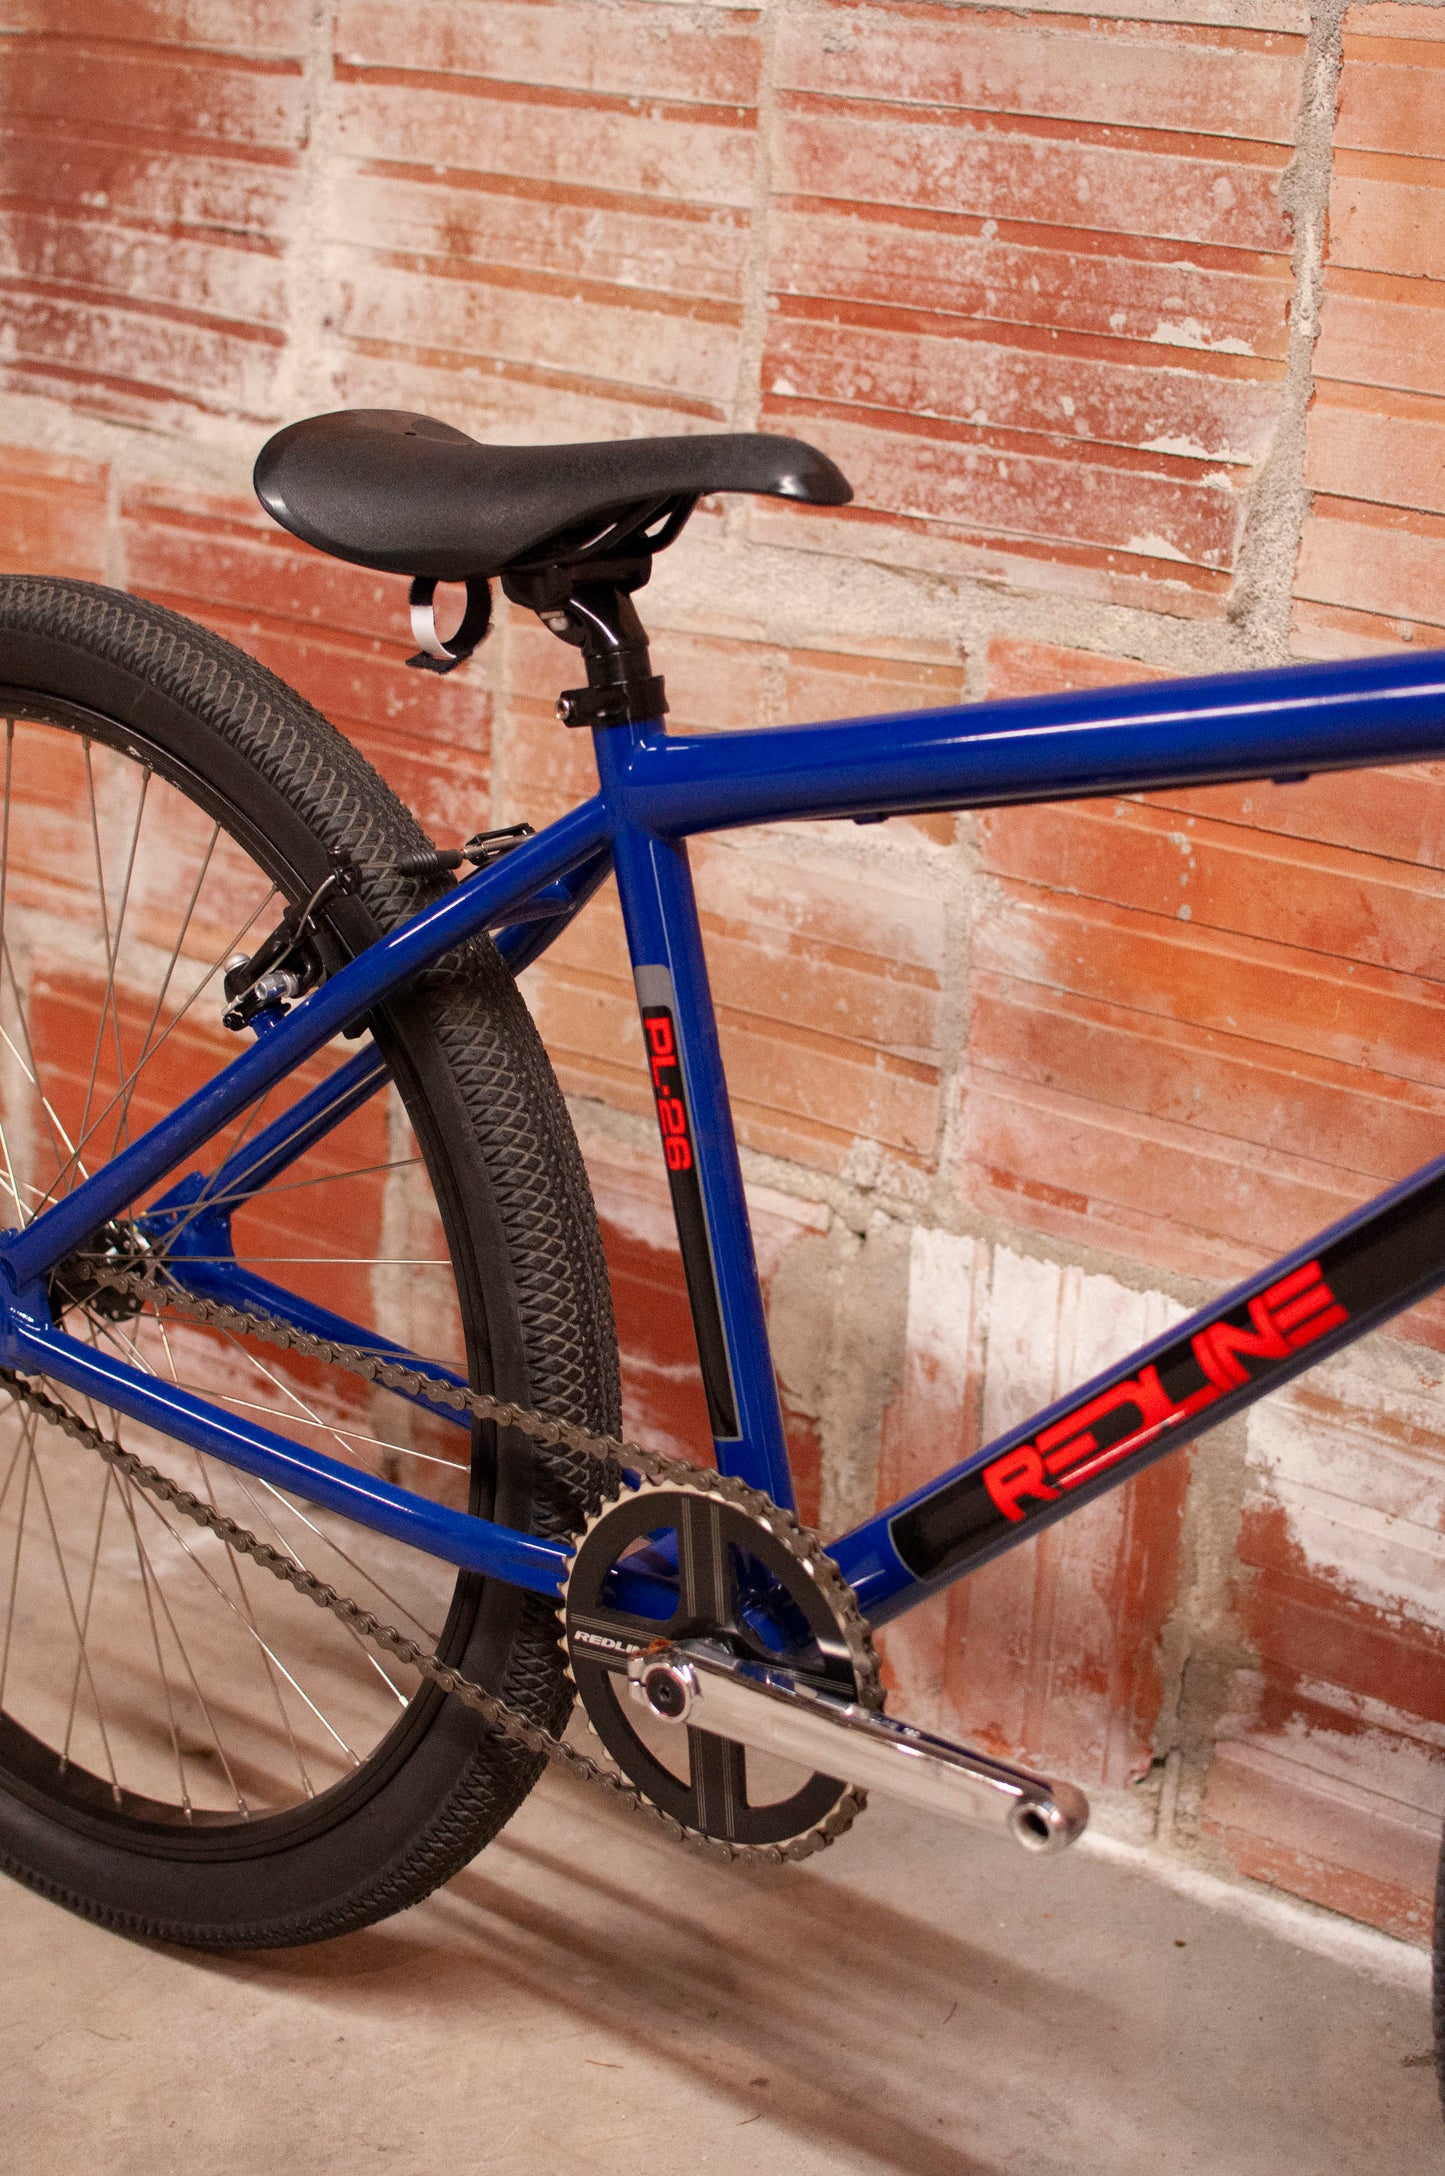 Redline PL26 BMX bike, Blue, 35 cm frame